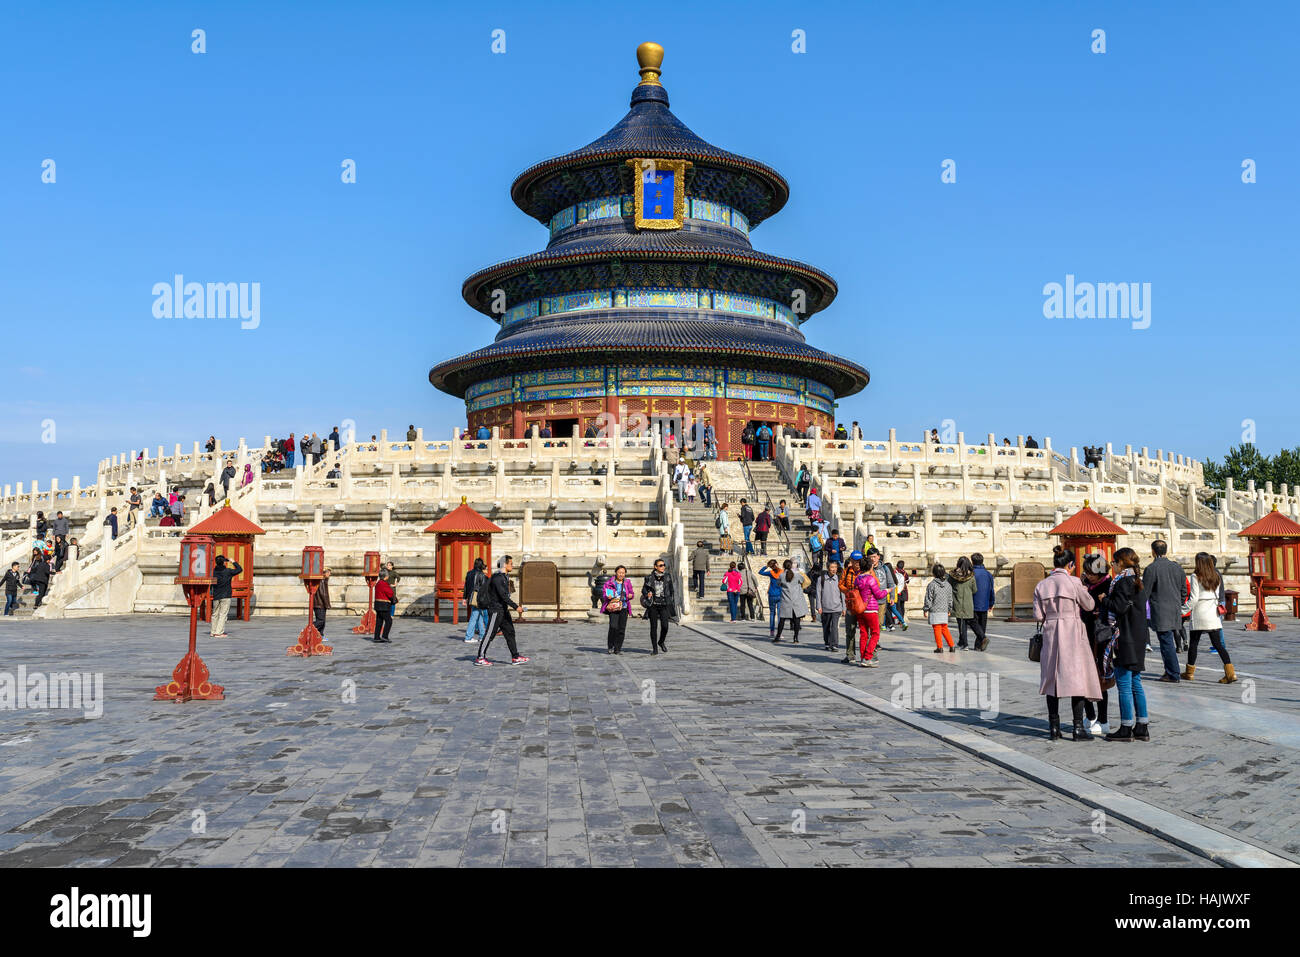 Tempel des Himmels - eine Frontansicht des Hall of Prayer für gute Ernten, die Hauptattraktion der Himmelstempel, Beijing, China. Stockfoto